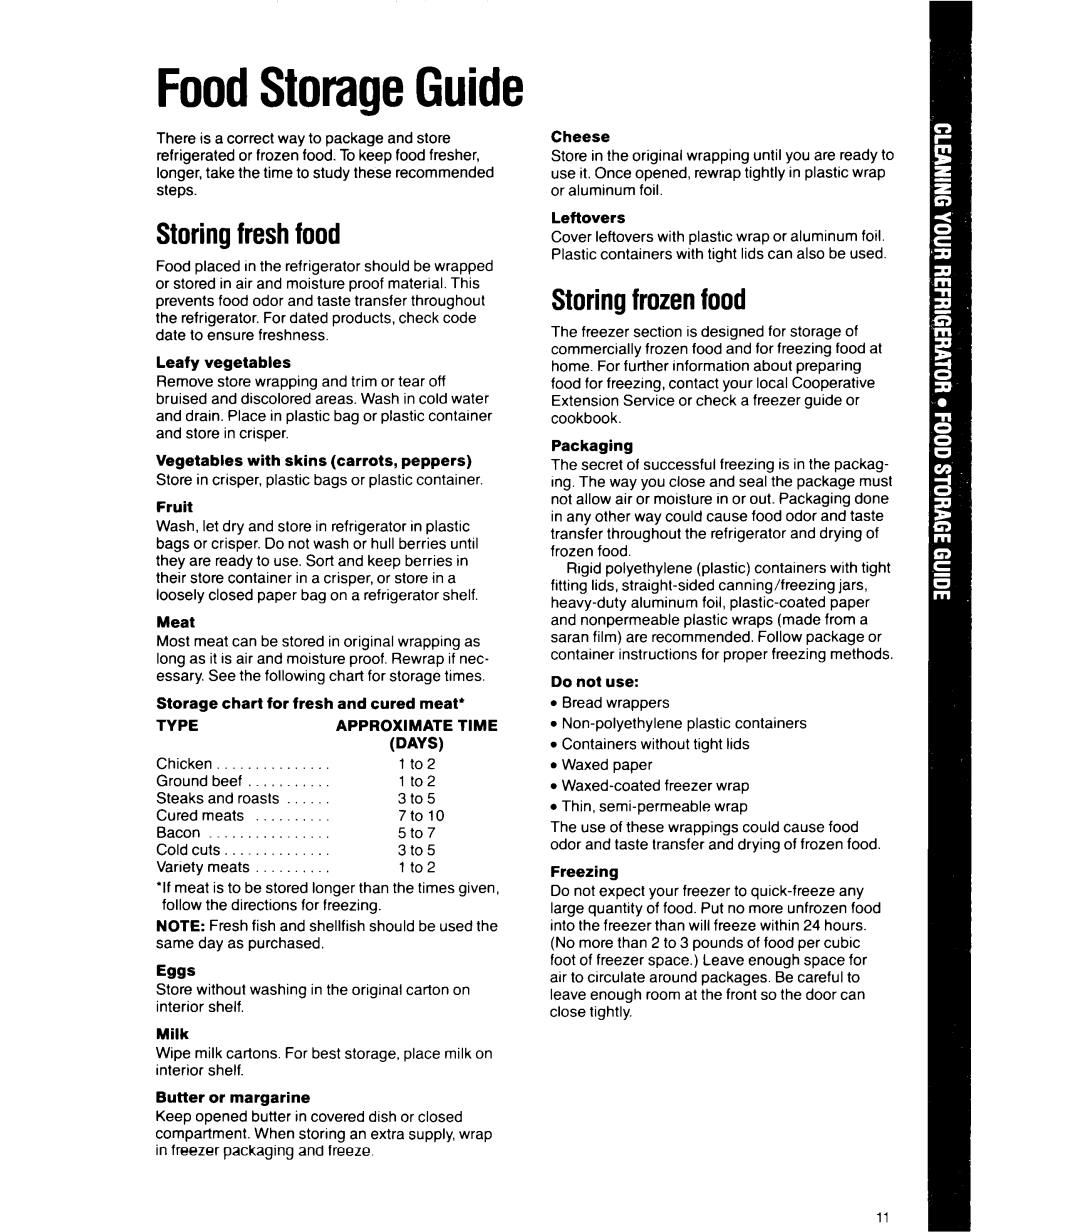 Whirlpool 6ETl6ZK manual FoodStorageGuide, Storingfreshfood, Storingfrozenfood, Eggs 